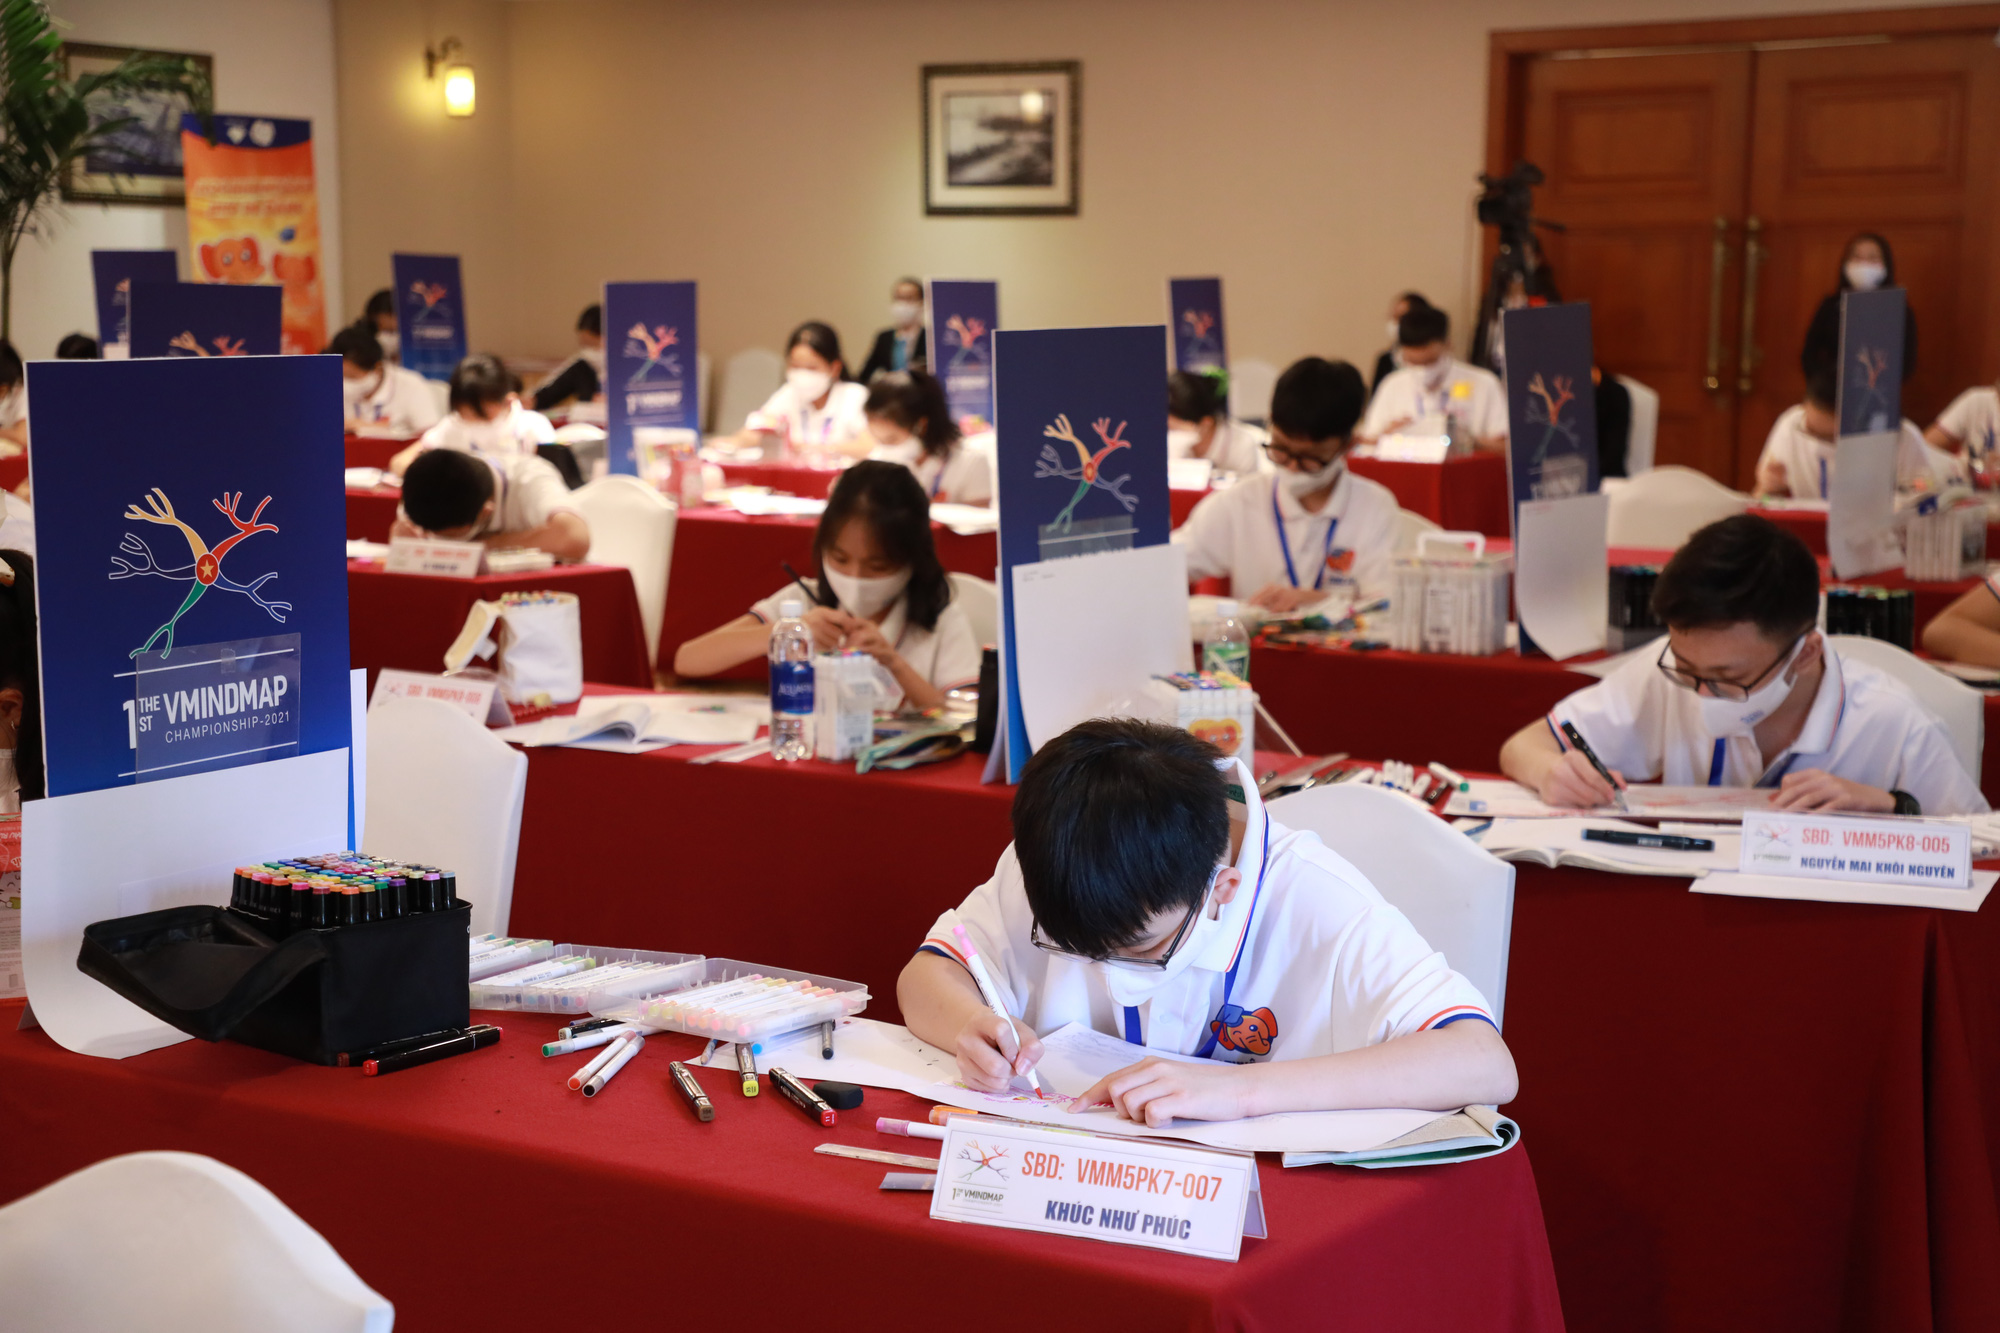 12 thí sinh giành giải nhất cuộc thi Sơ đồ tư duy Việt Nam, tham gia đội tuyển kỷ lục quốc gia - Ảnh 1.